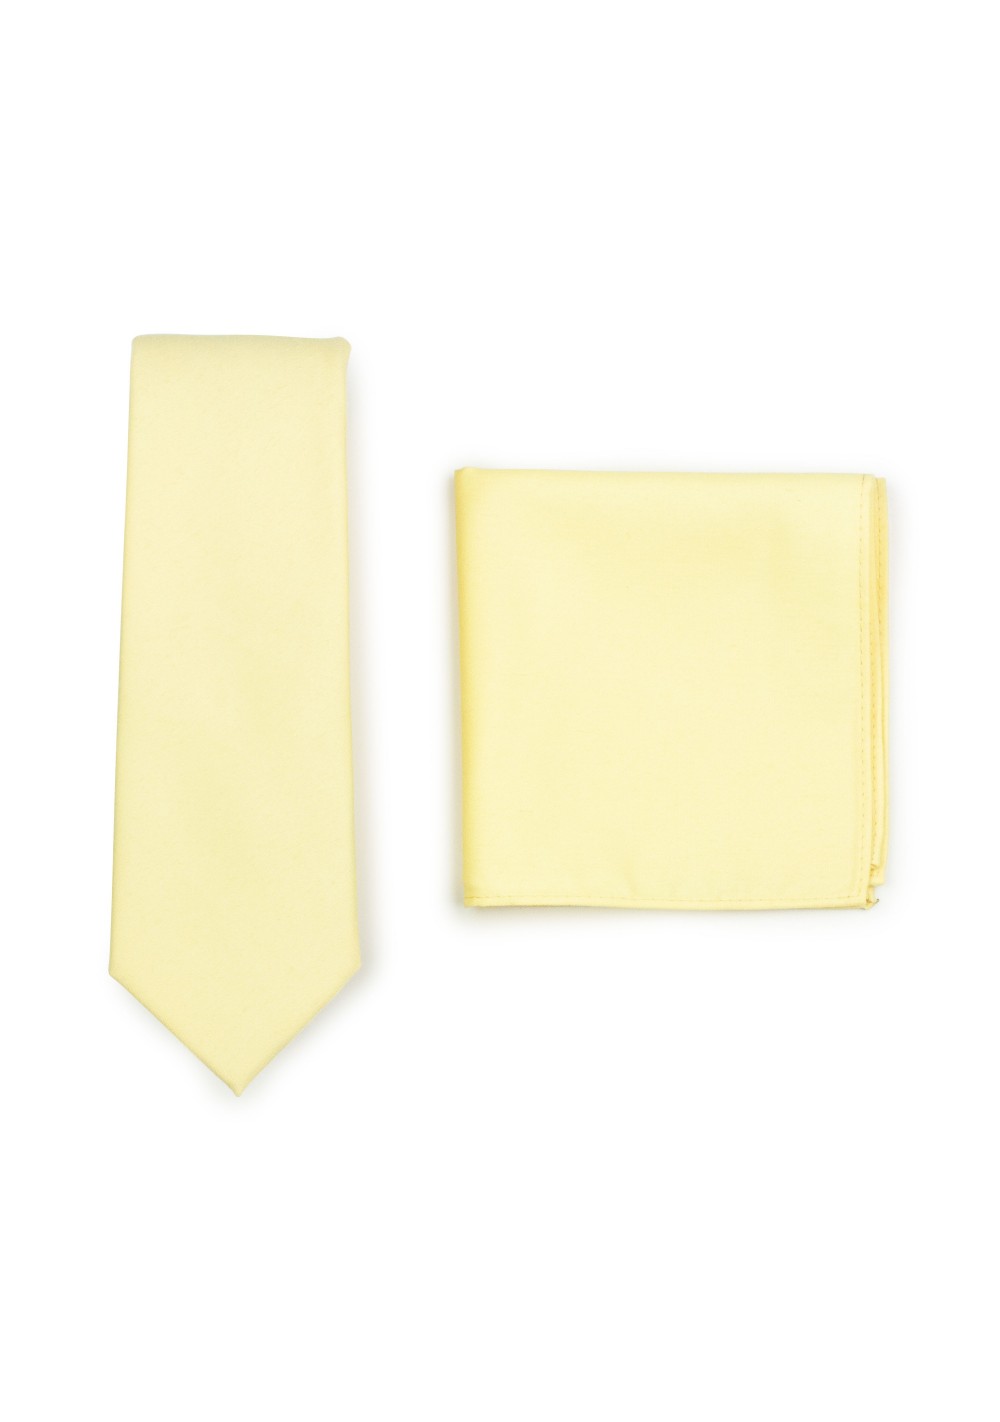 Matte Skinny Tie and Hanky Set in Lemon Chiffon